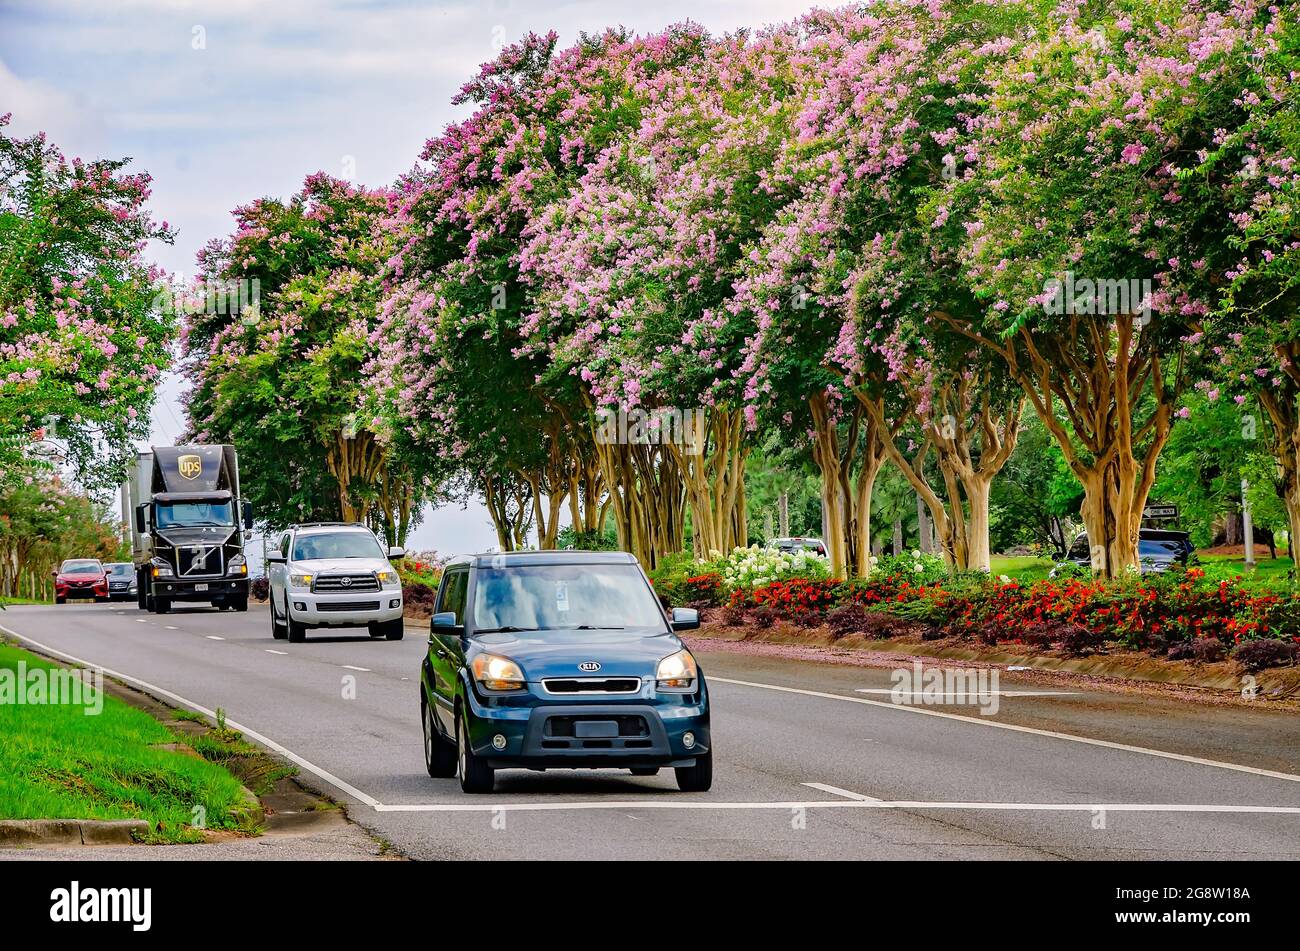 Des arbres à myrte de colza rose (Lagerstroemia) fleurissent sur le boulevard de l'Université en face de l'Université de l'Alabama du Sud, le 18 juillet 2021, à Mobile, Alabama. Banque D'Images